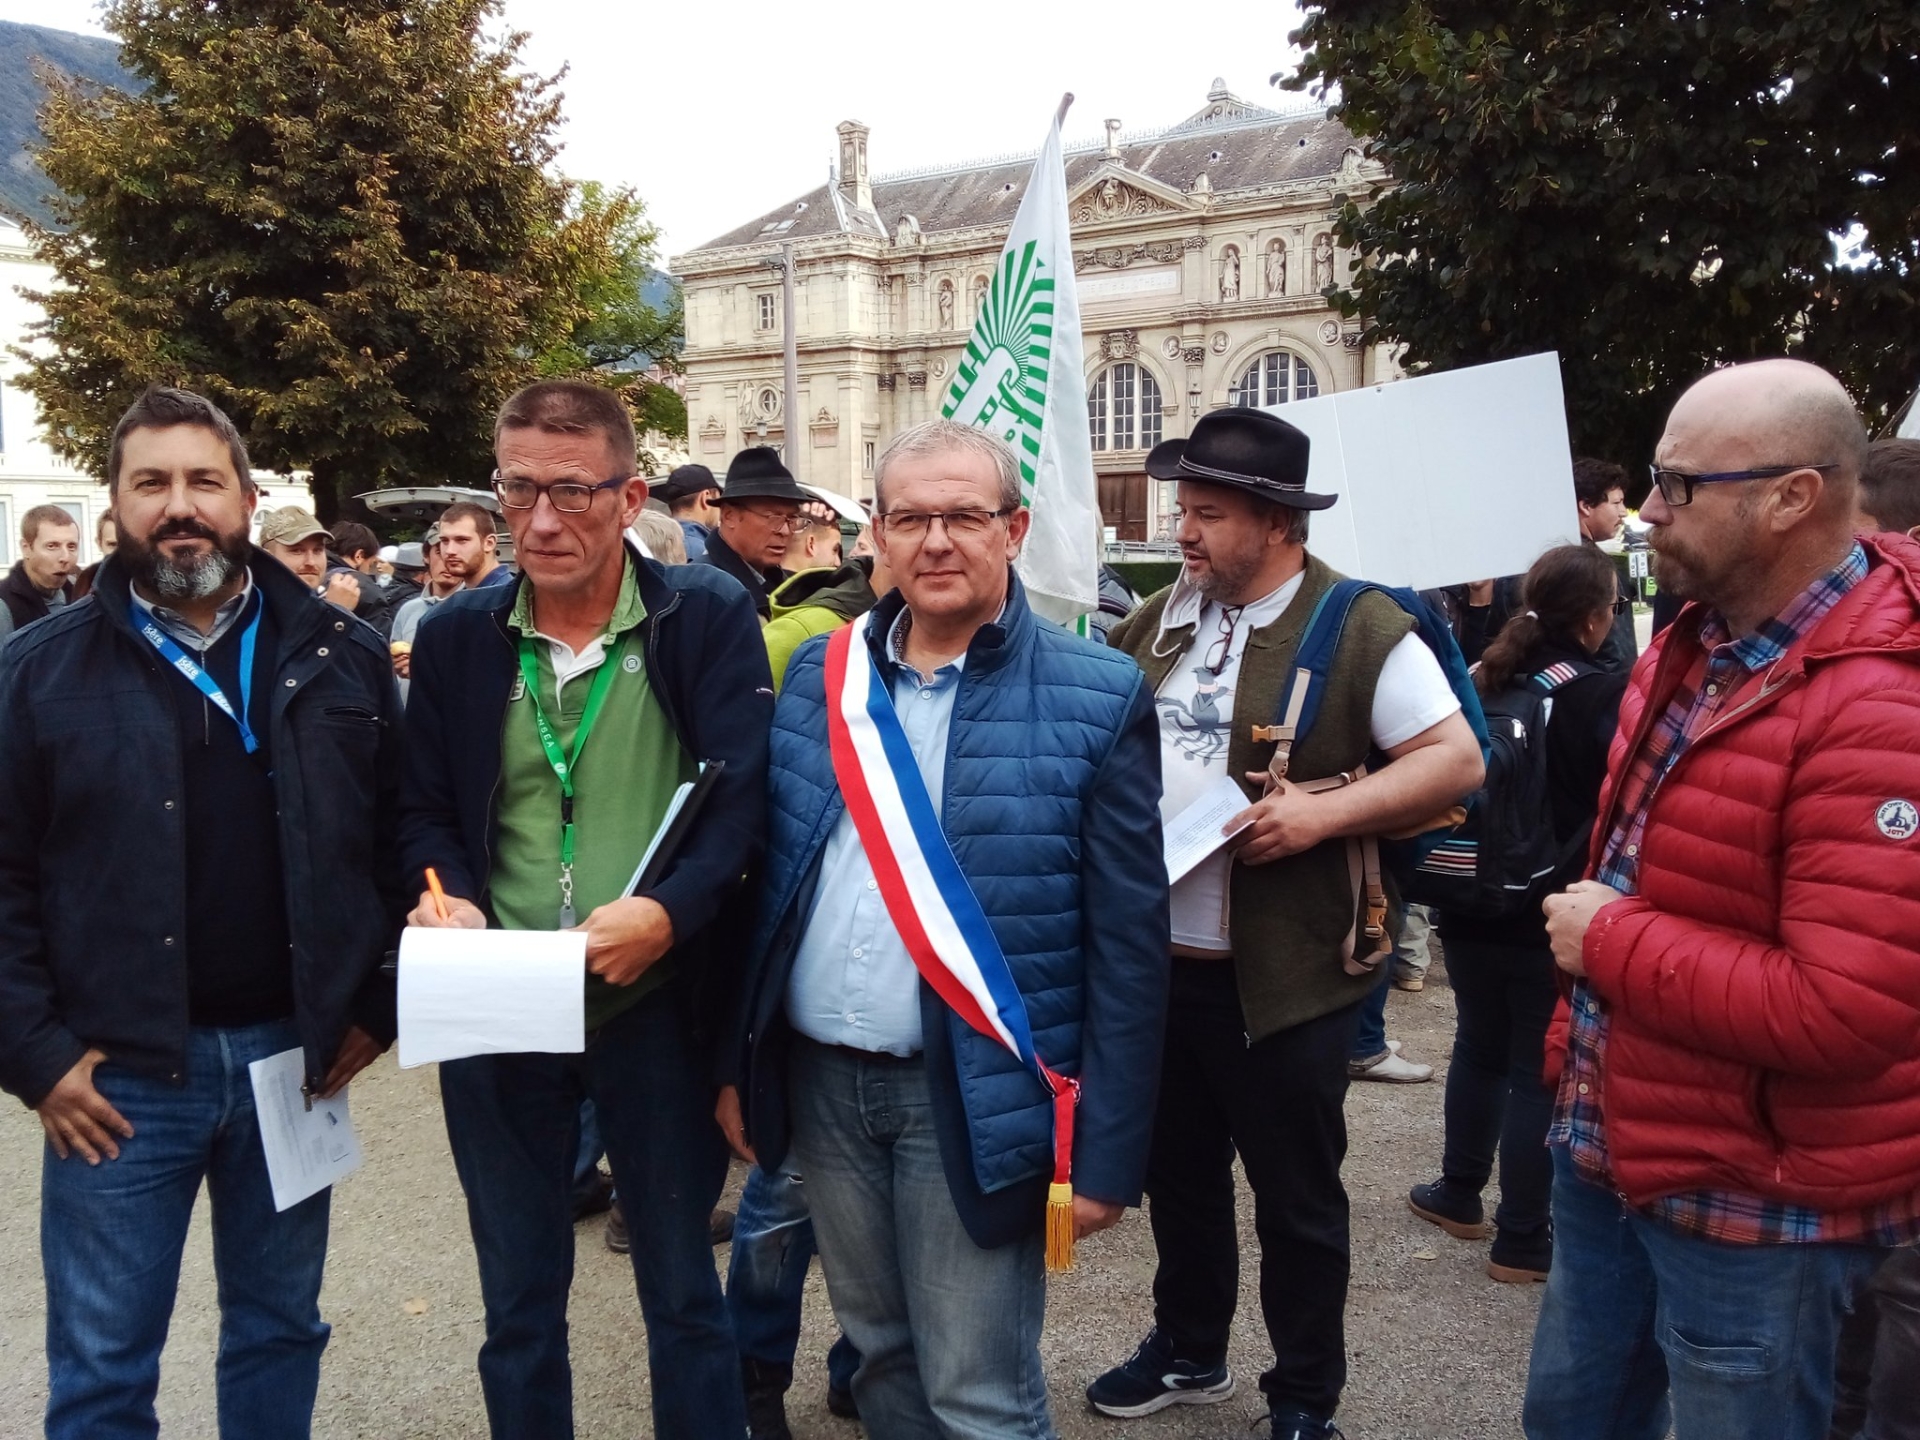 Queue de loup : éleveurs, élus, syndicalistes mobilisés à Grenoble